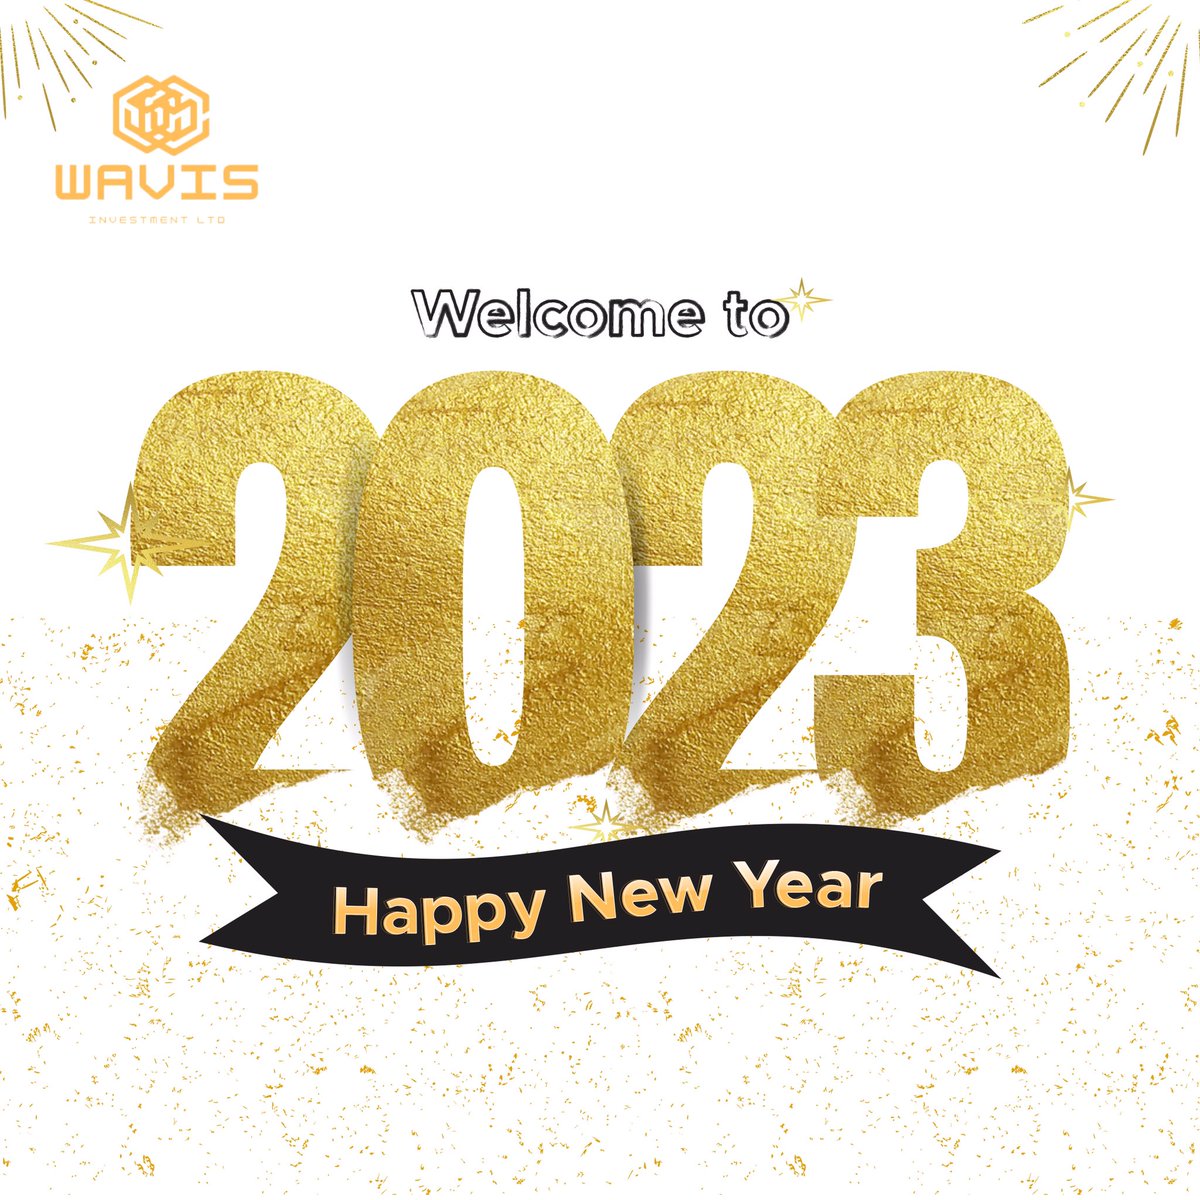 Fresh start, new goals, here we go 2023!
Here's to new beginnings

#happynewyear #january #2023 #smartinvestors #newgoals #love